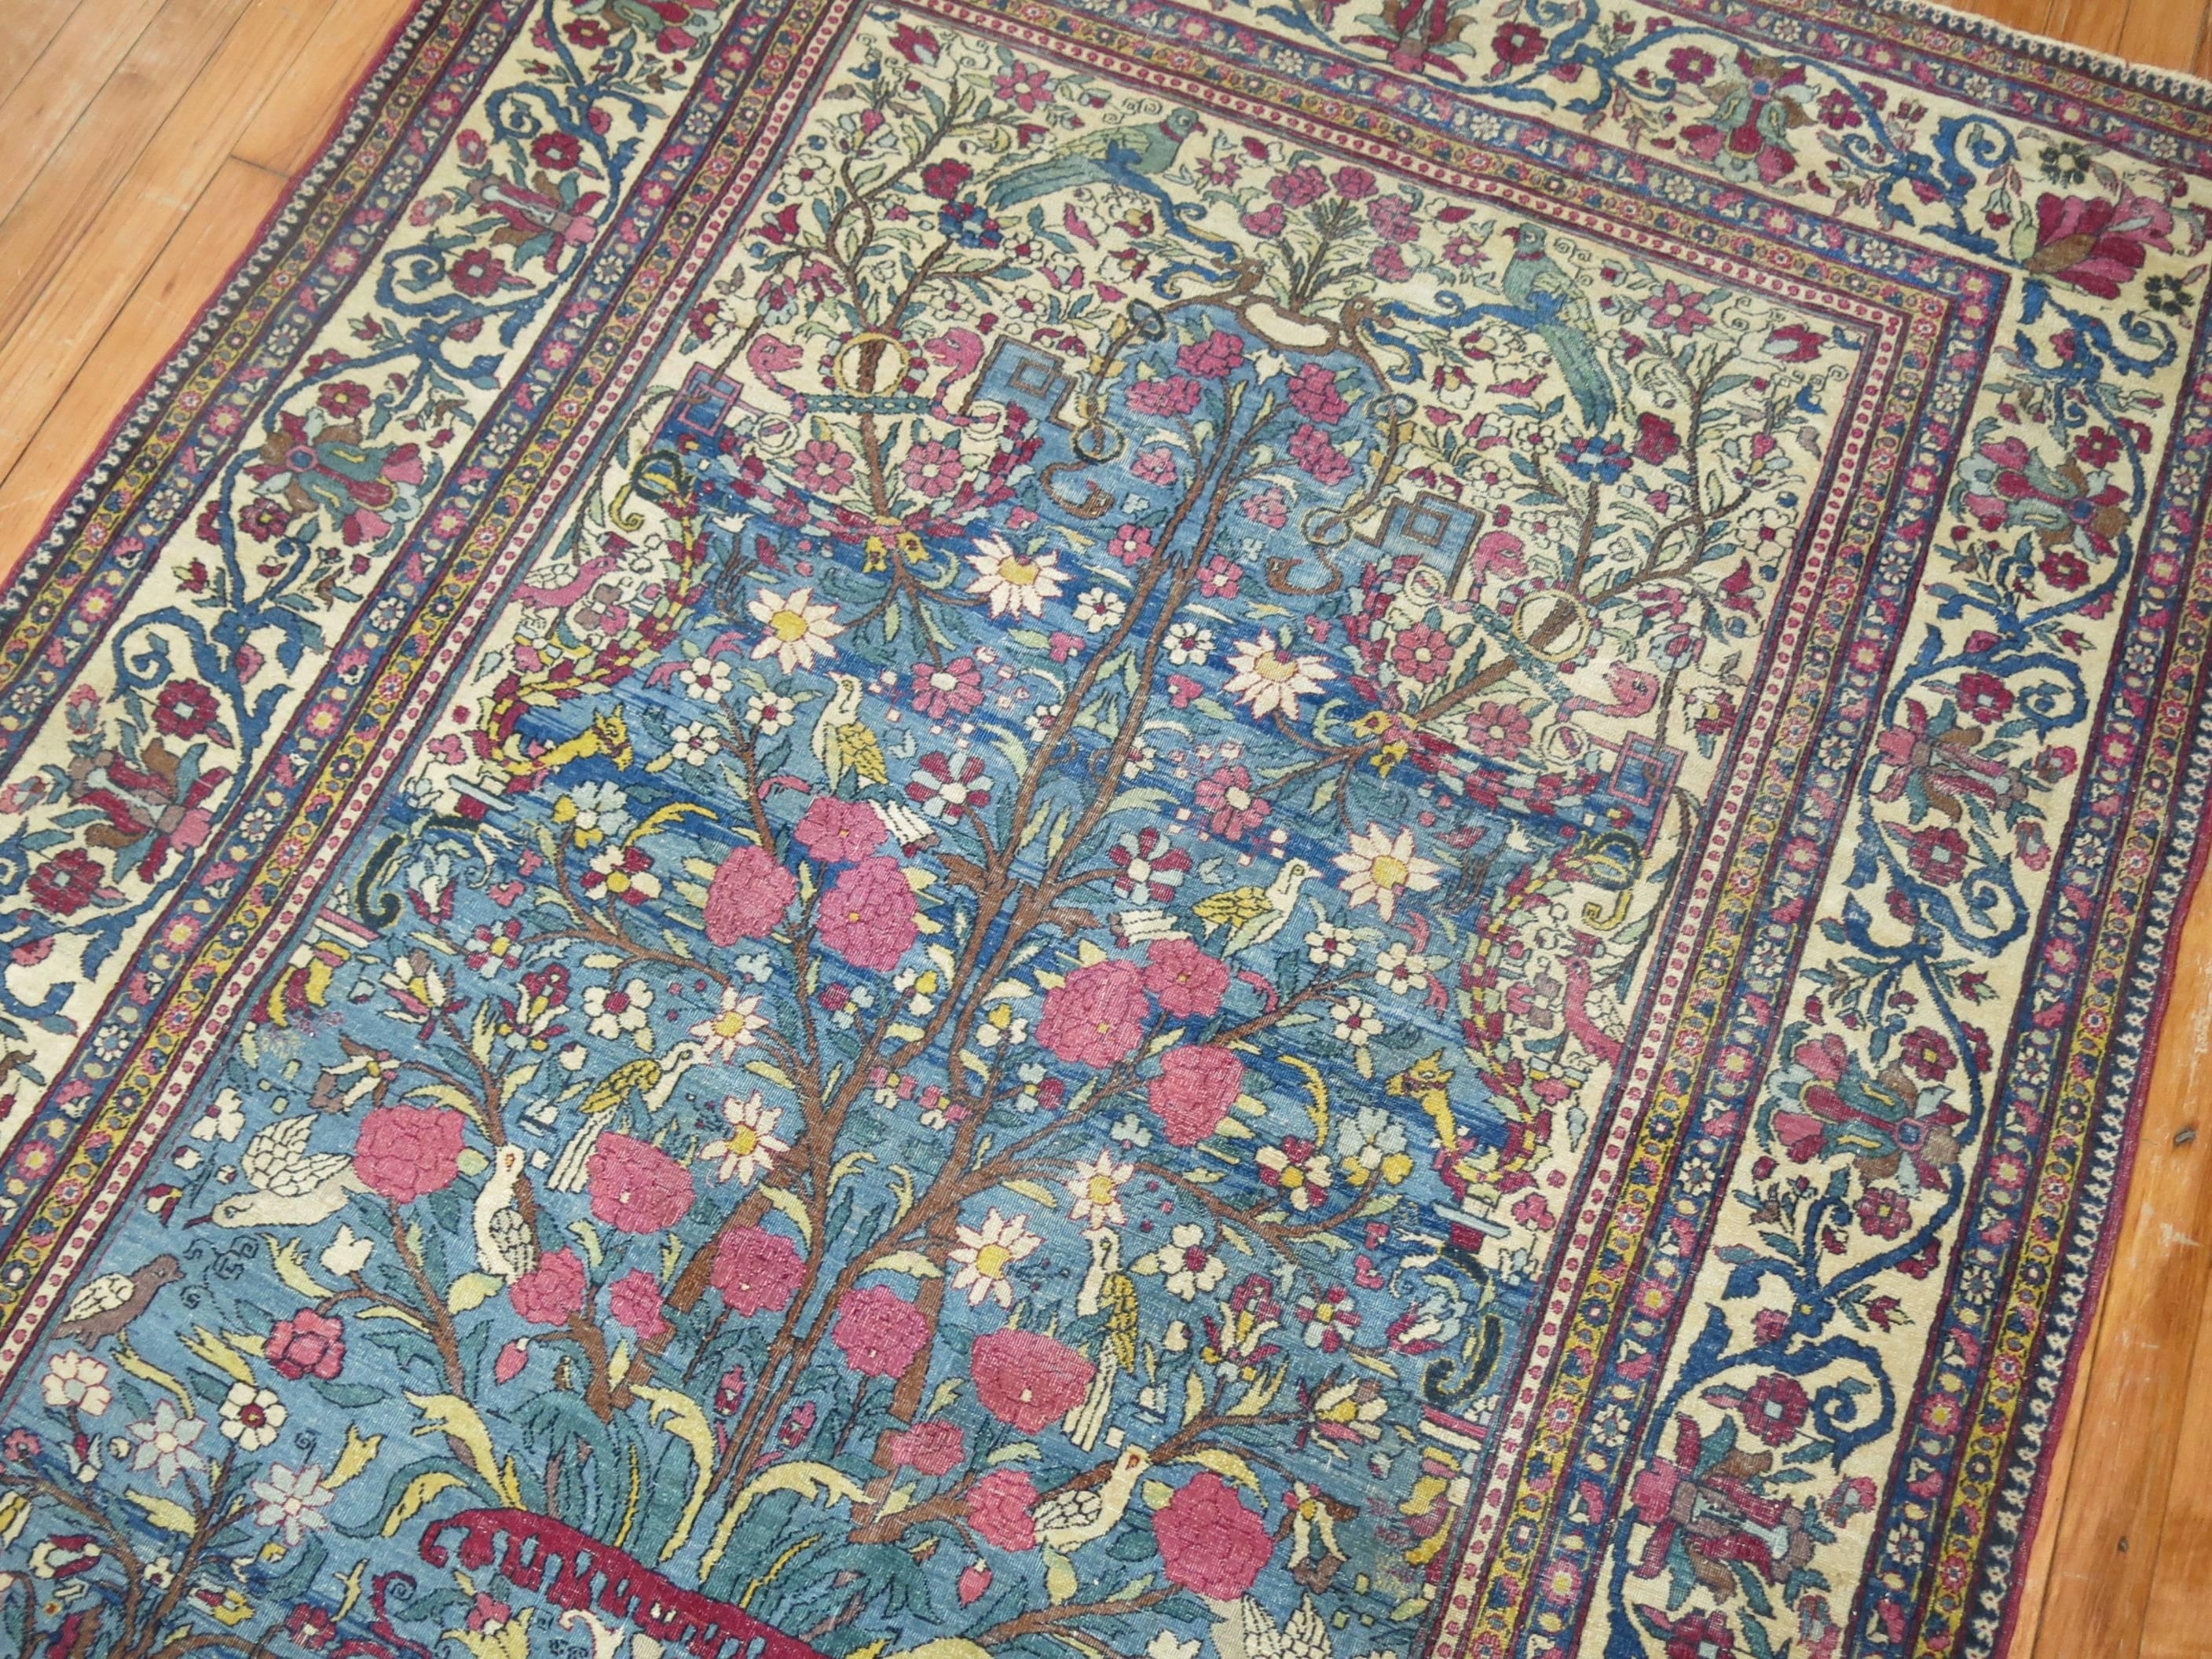 Pictorial Persian Isfahan Prayer Carpet 2